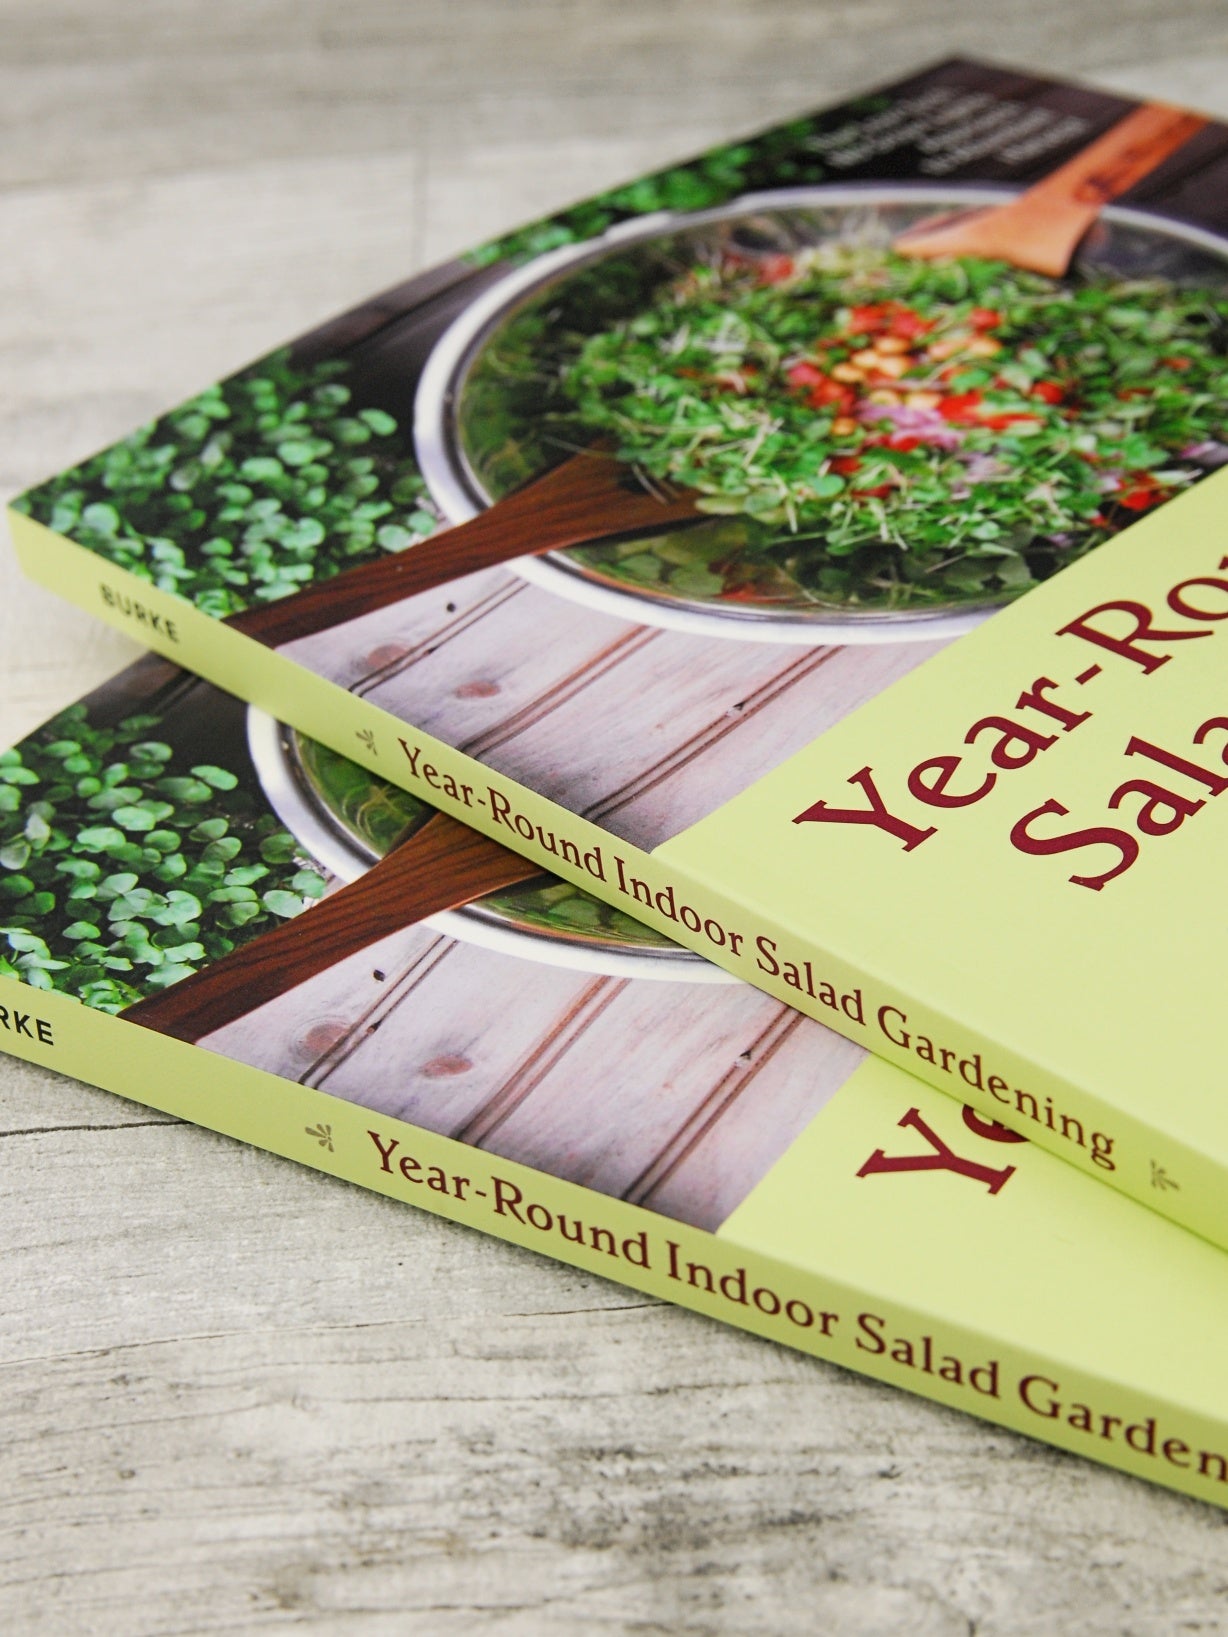 Year-Round Indoor Salad Gardening